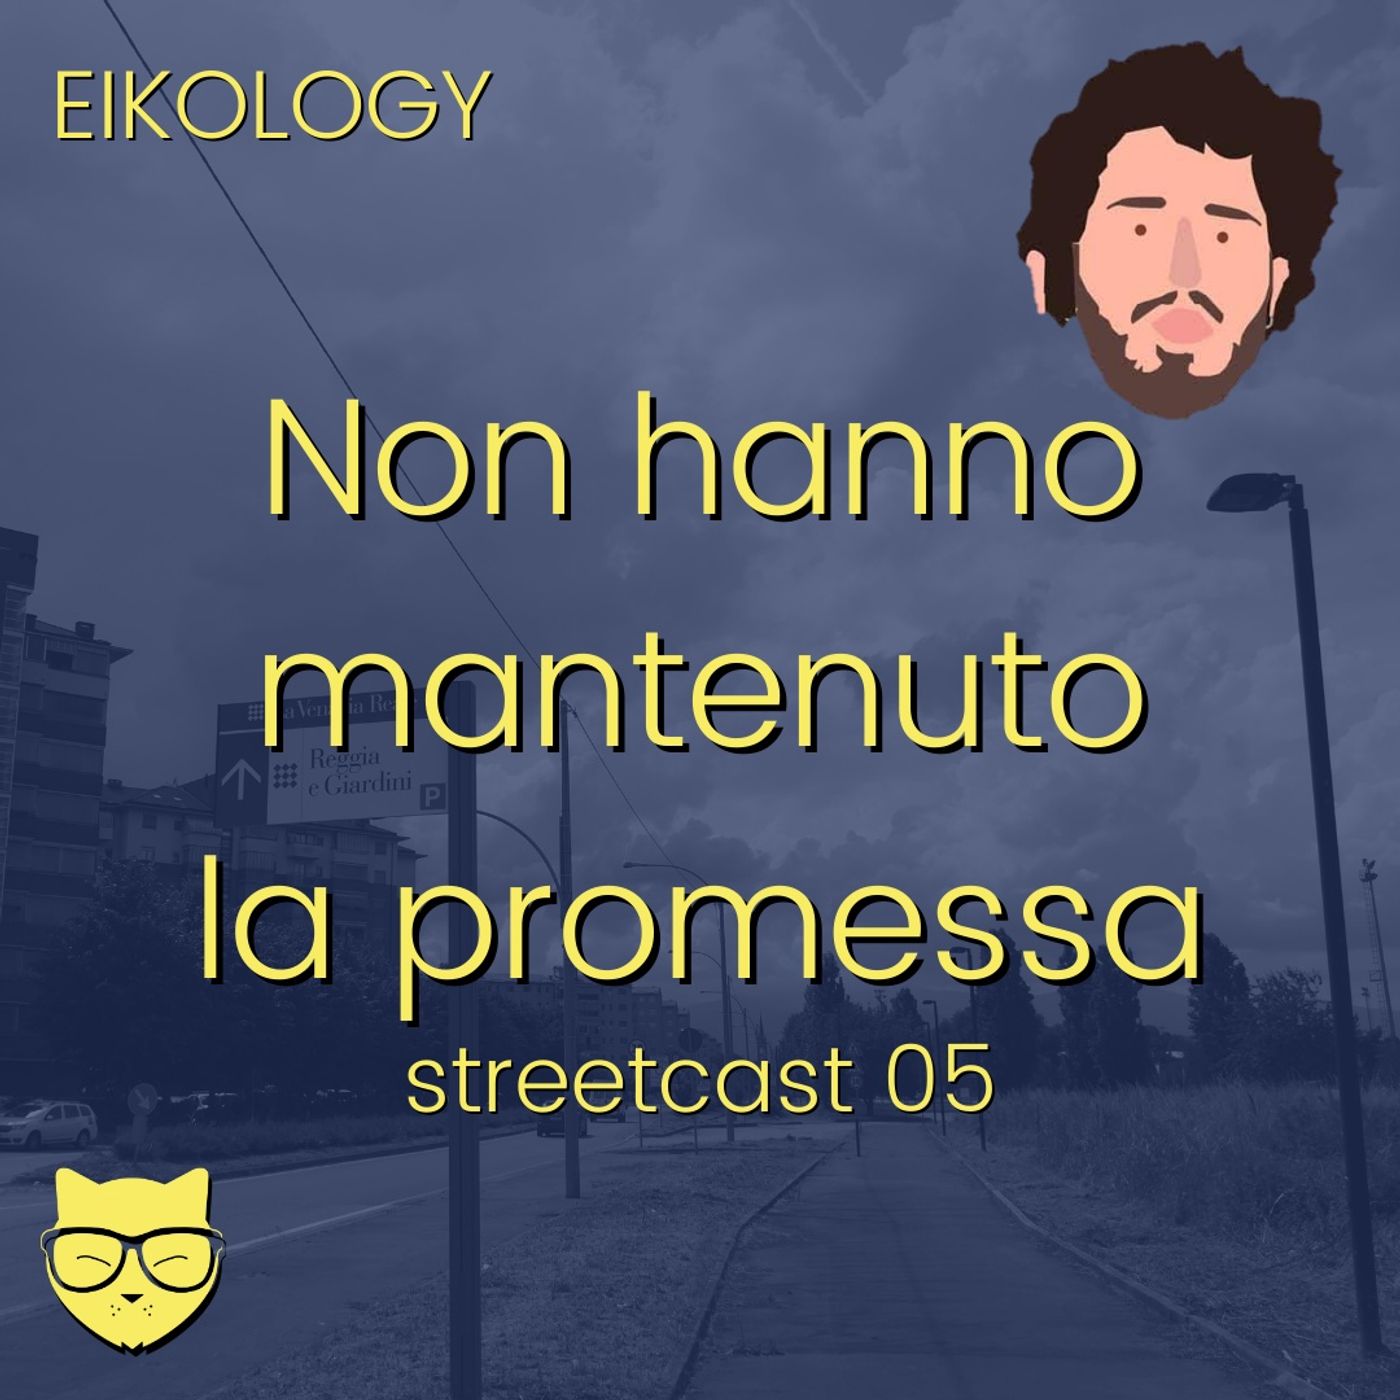 Non hanno mantenuto la promessa (streetcast 05)